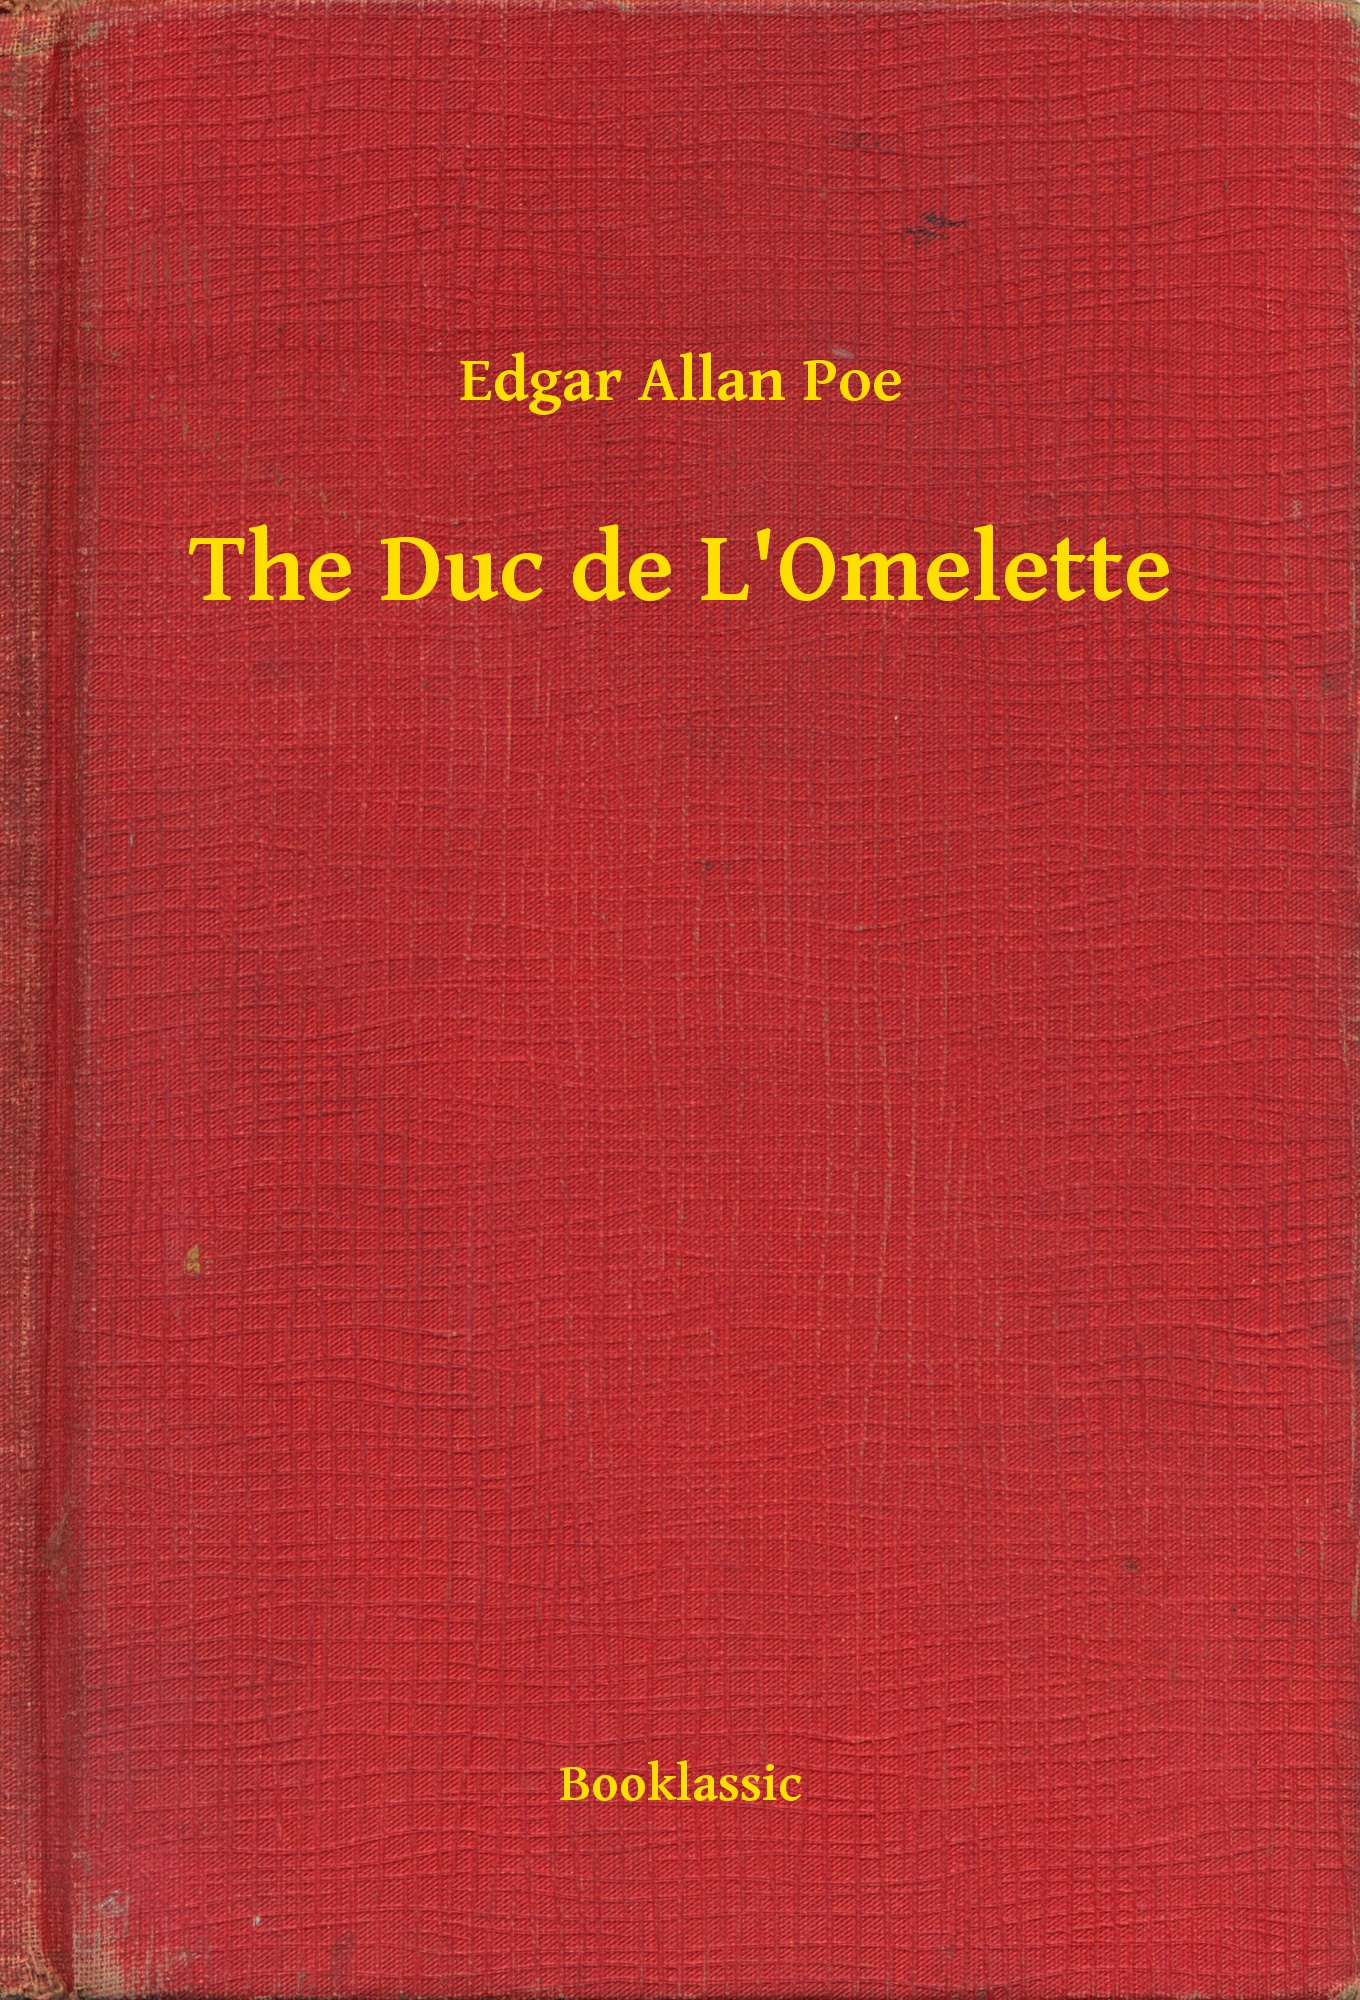 The Duc de L"Omelette